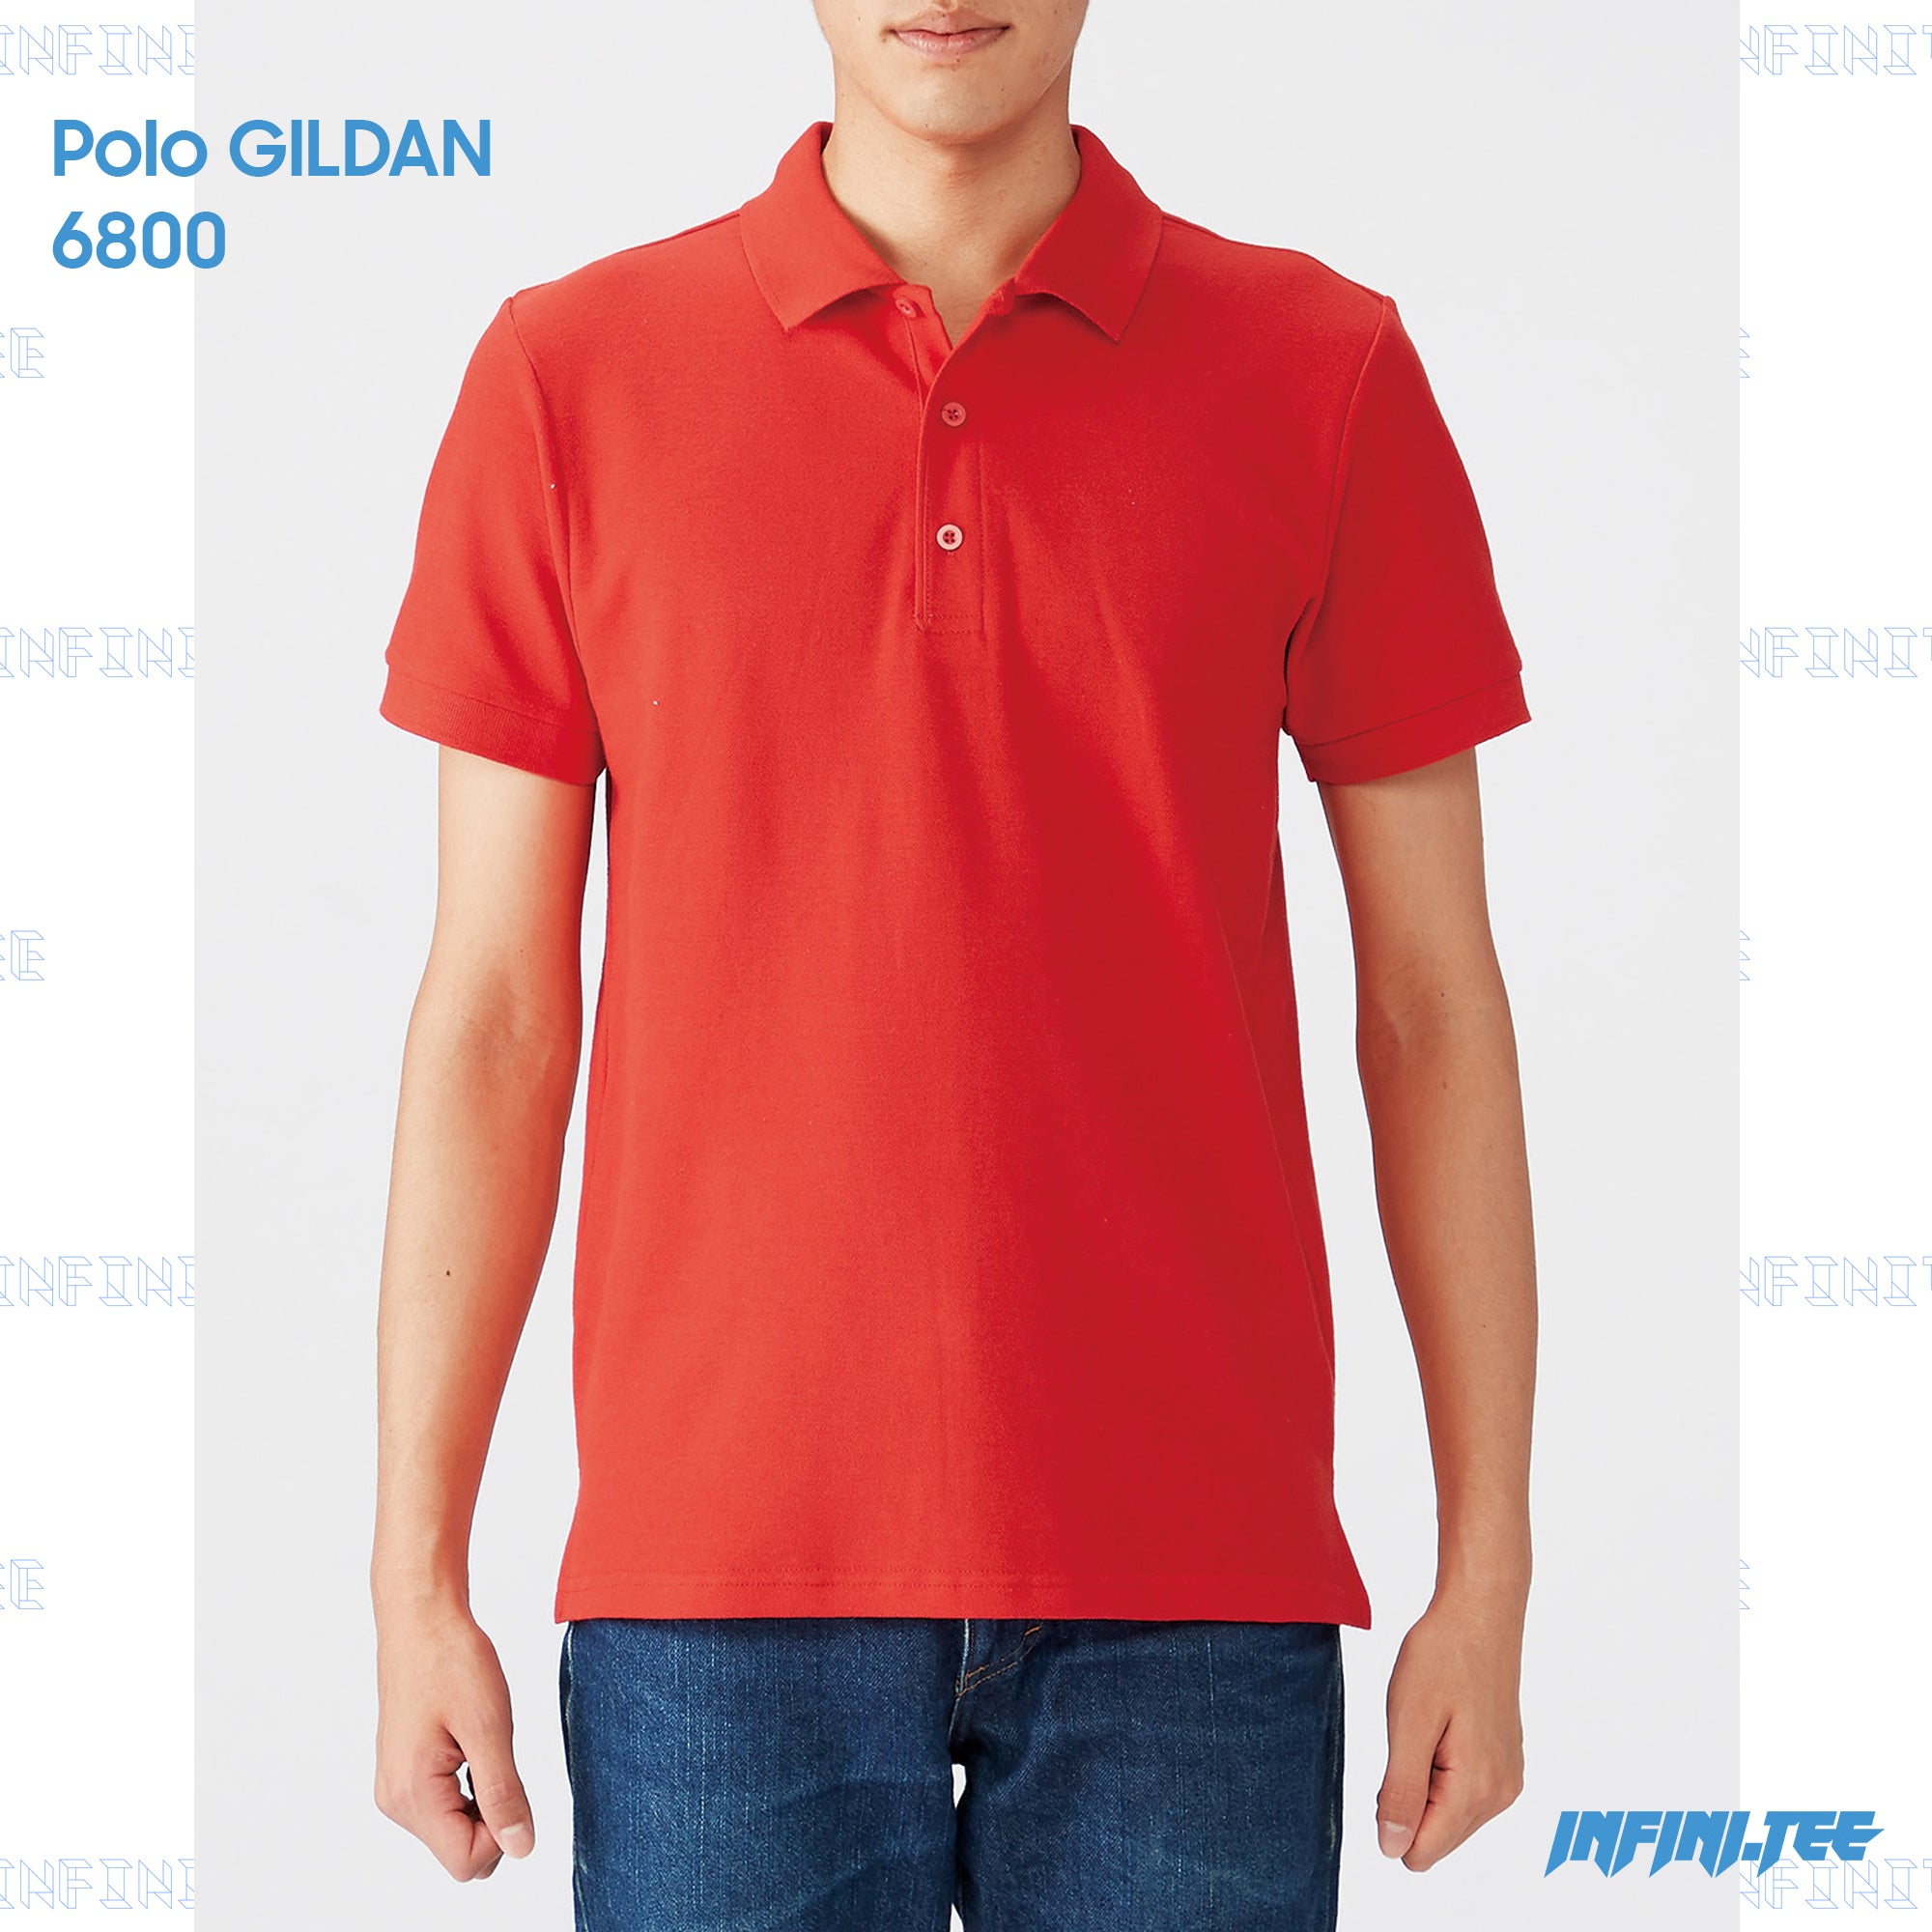 POLO 6800 GILDAN - RED